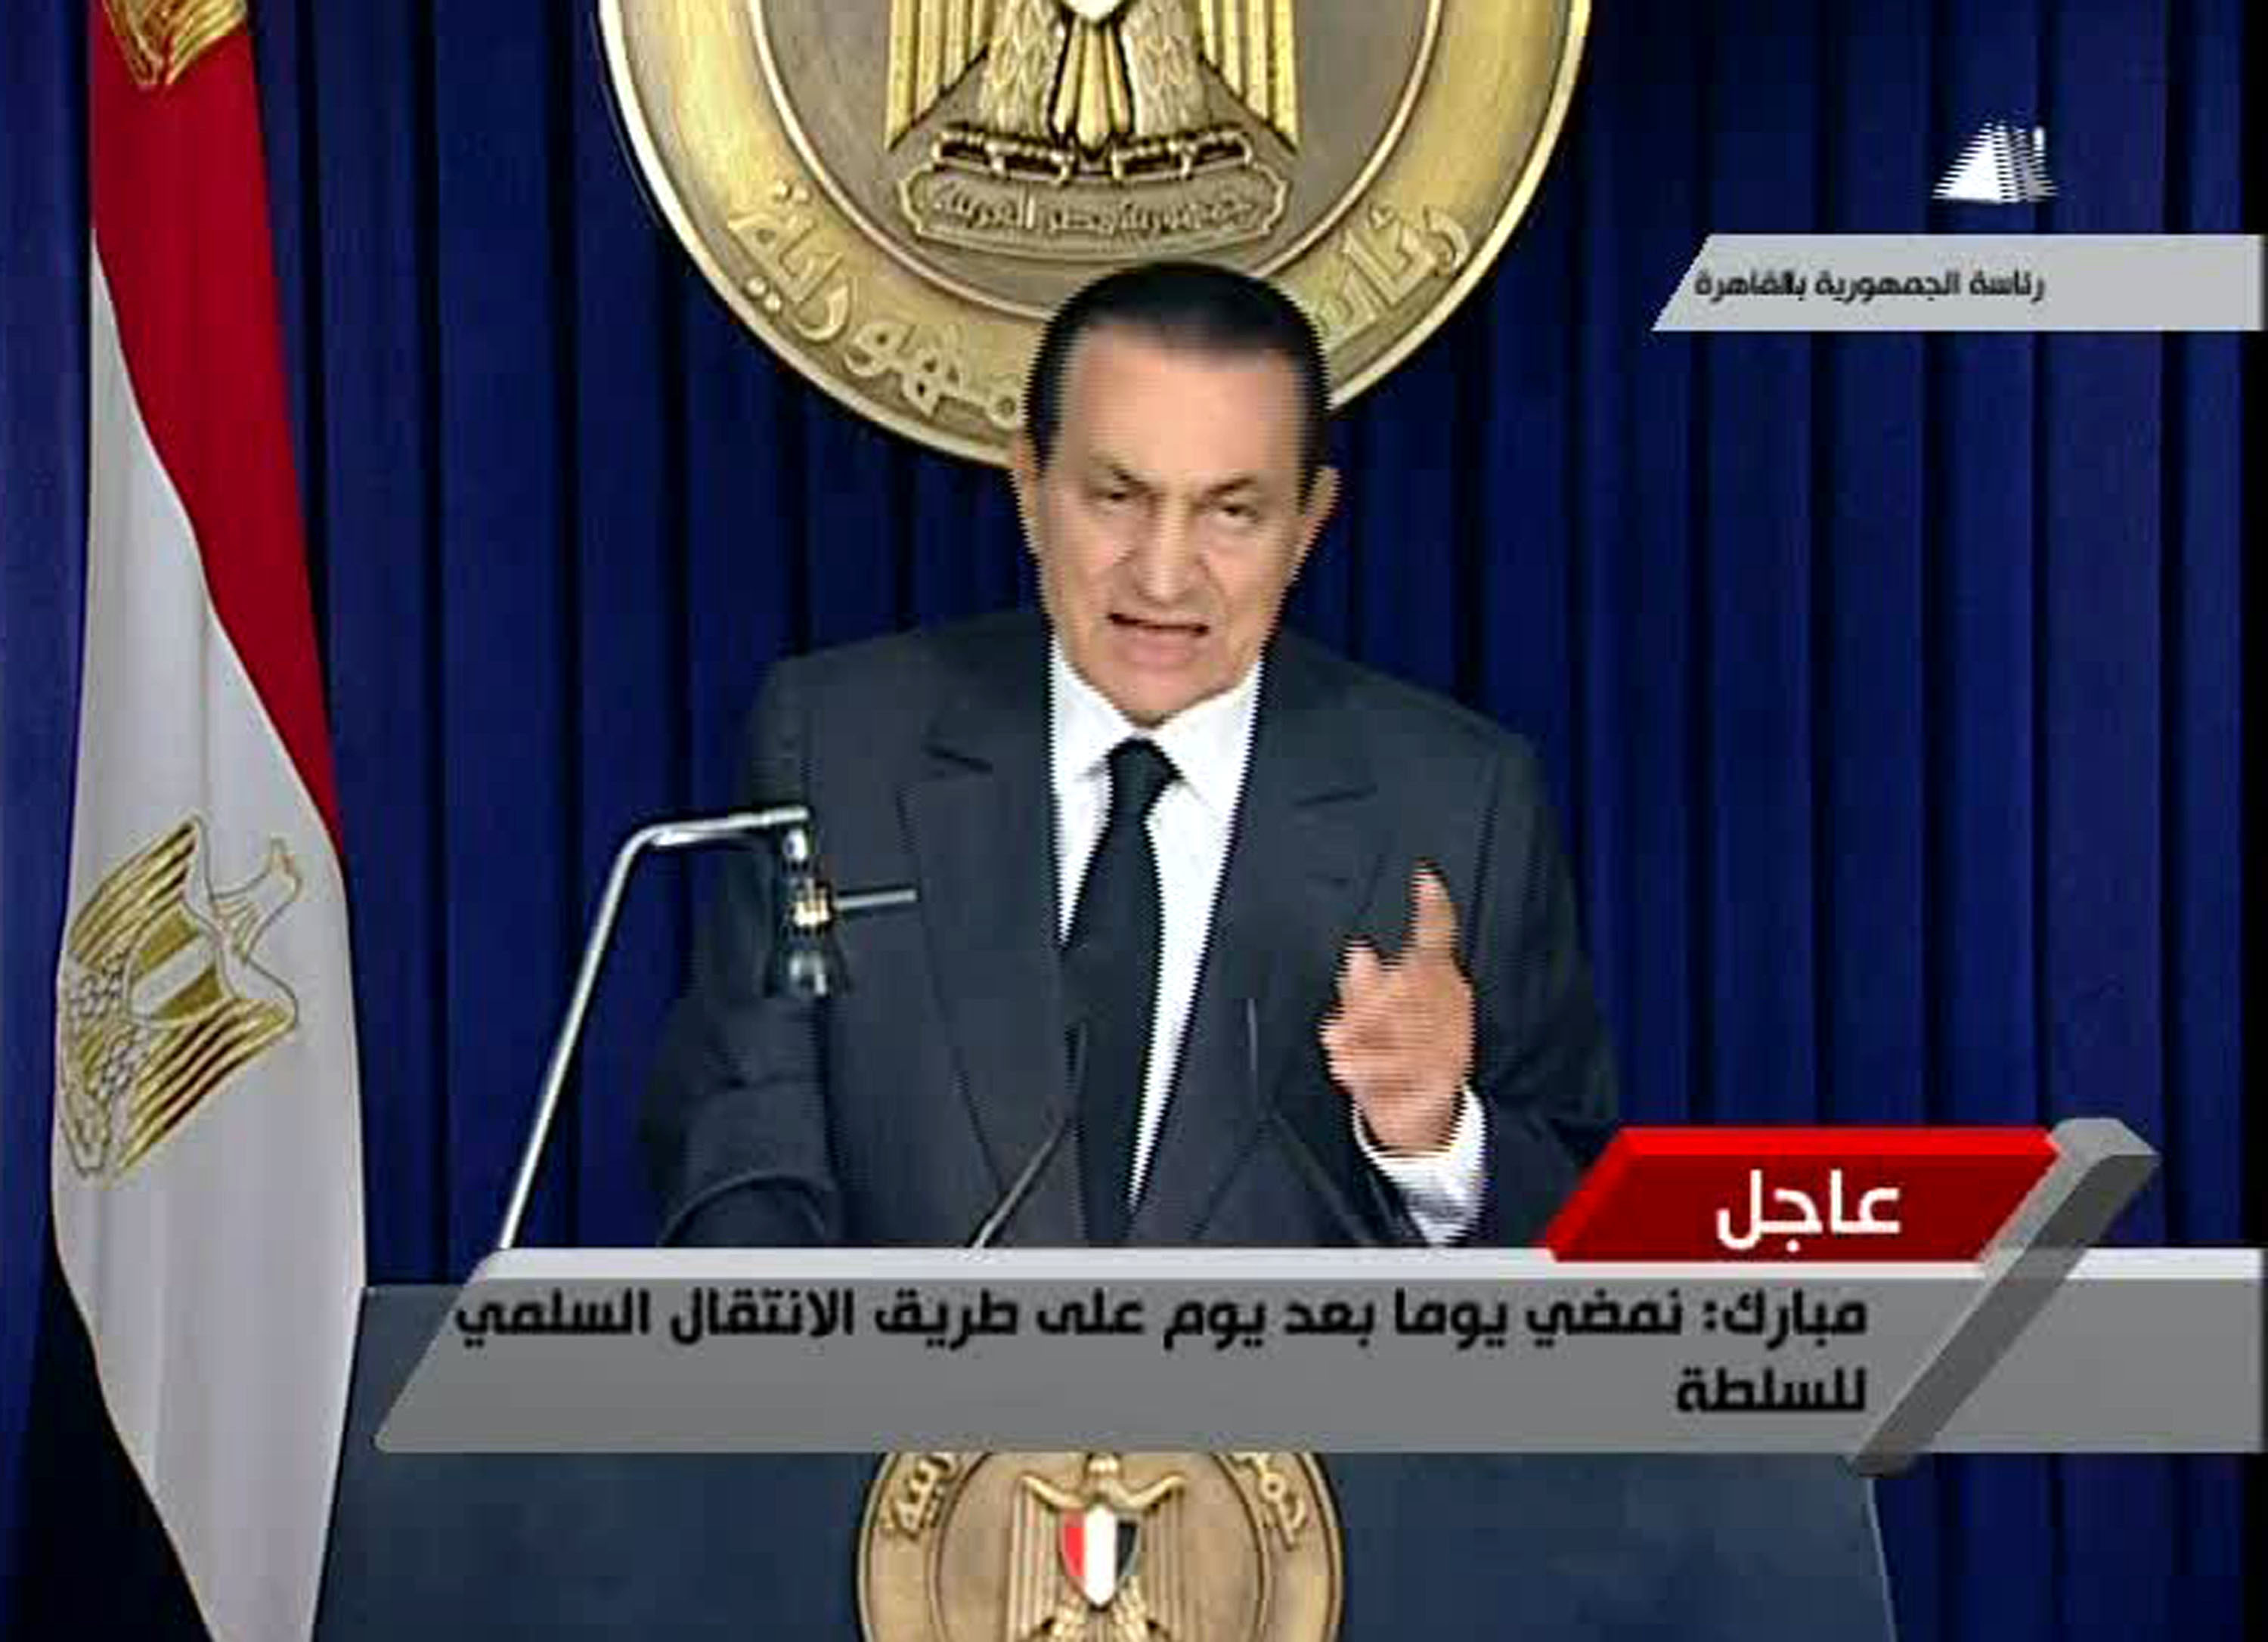 Νέα ανακοπή καρδιάς υπέστη ο Χόσνι Μουμπάρακ